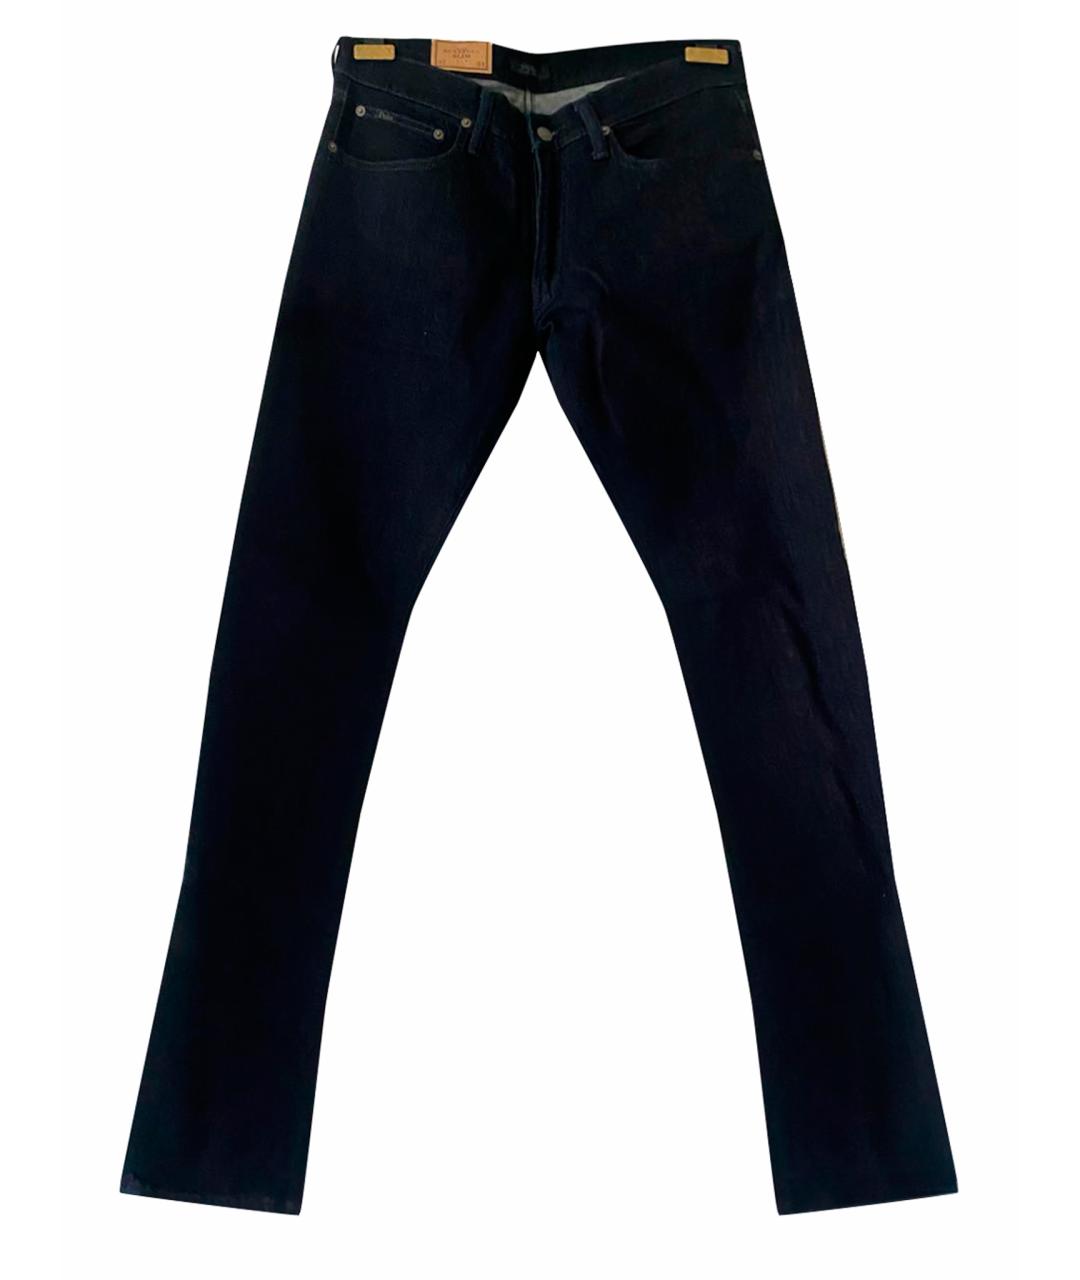 POLO RALPH LAUREN Темно-синие хлопковые джинсы скинни, фото 1